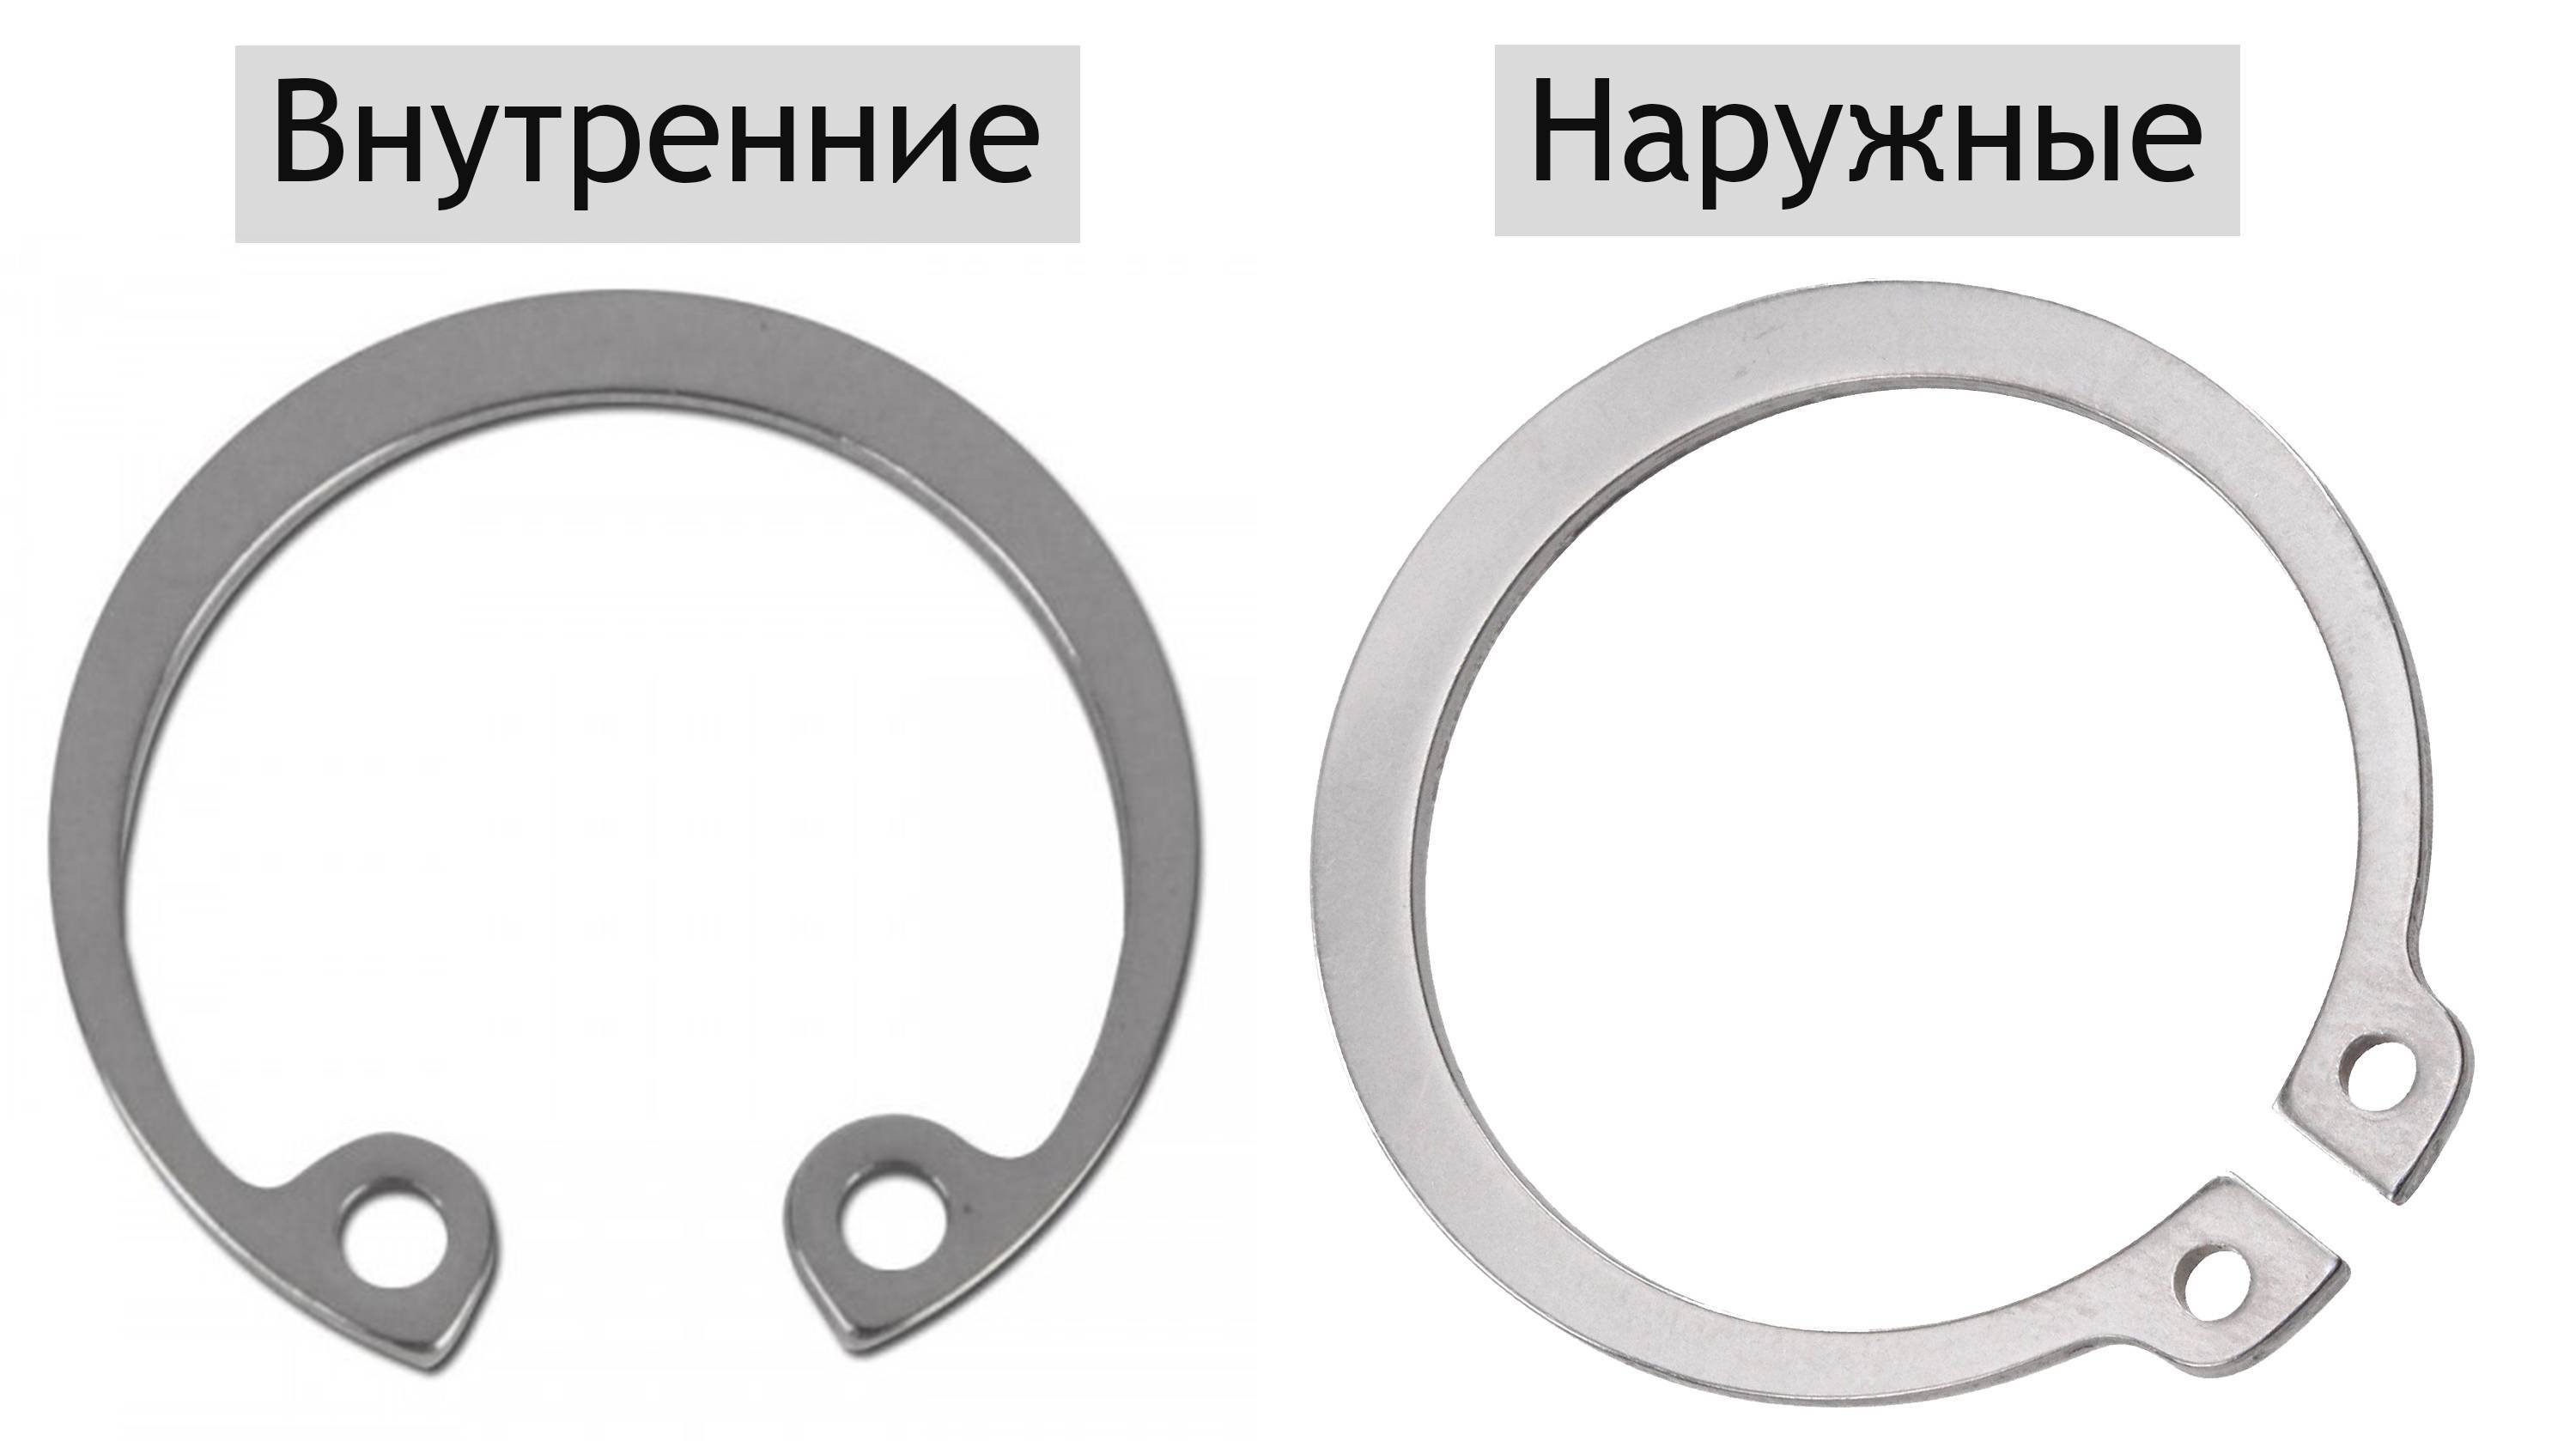 Съемник стопорных колец: конструкция, виды, характеристики. как снимать стопорные кольца с разных механизмов и деталей